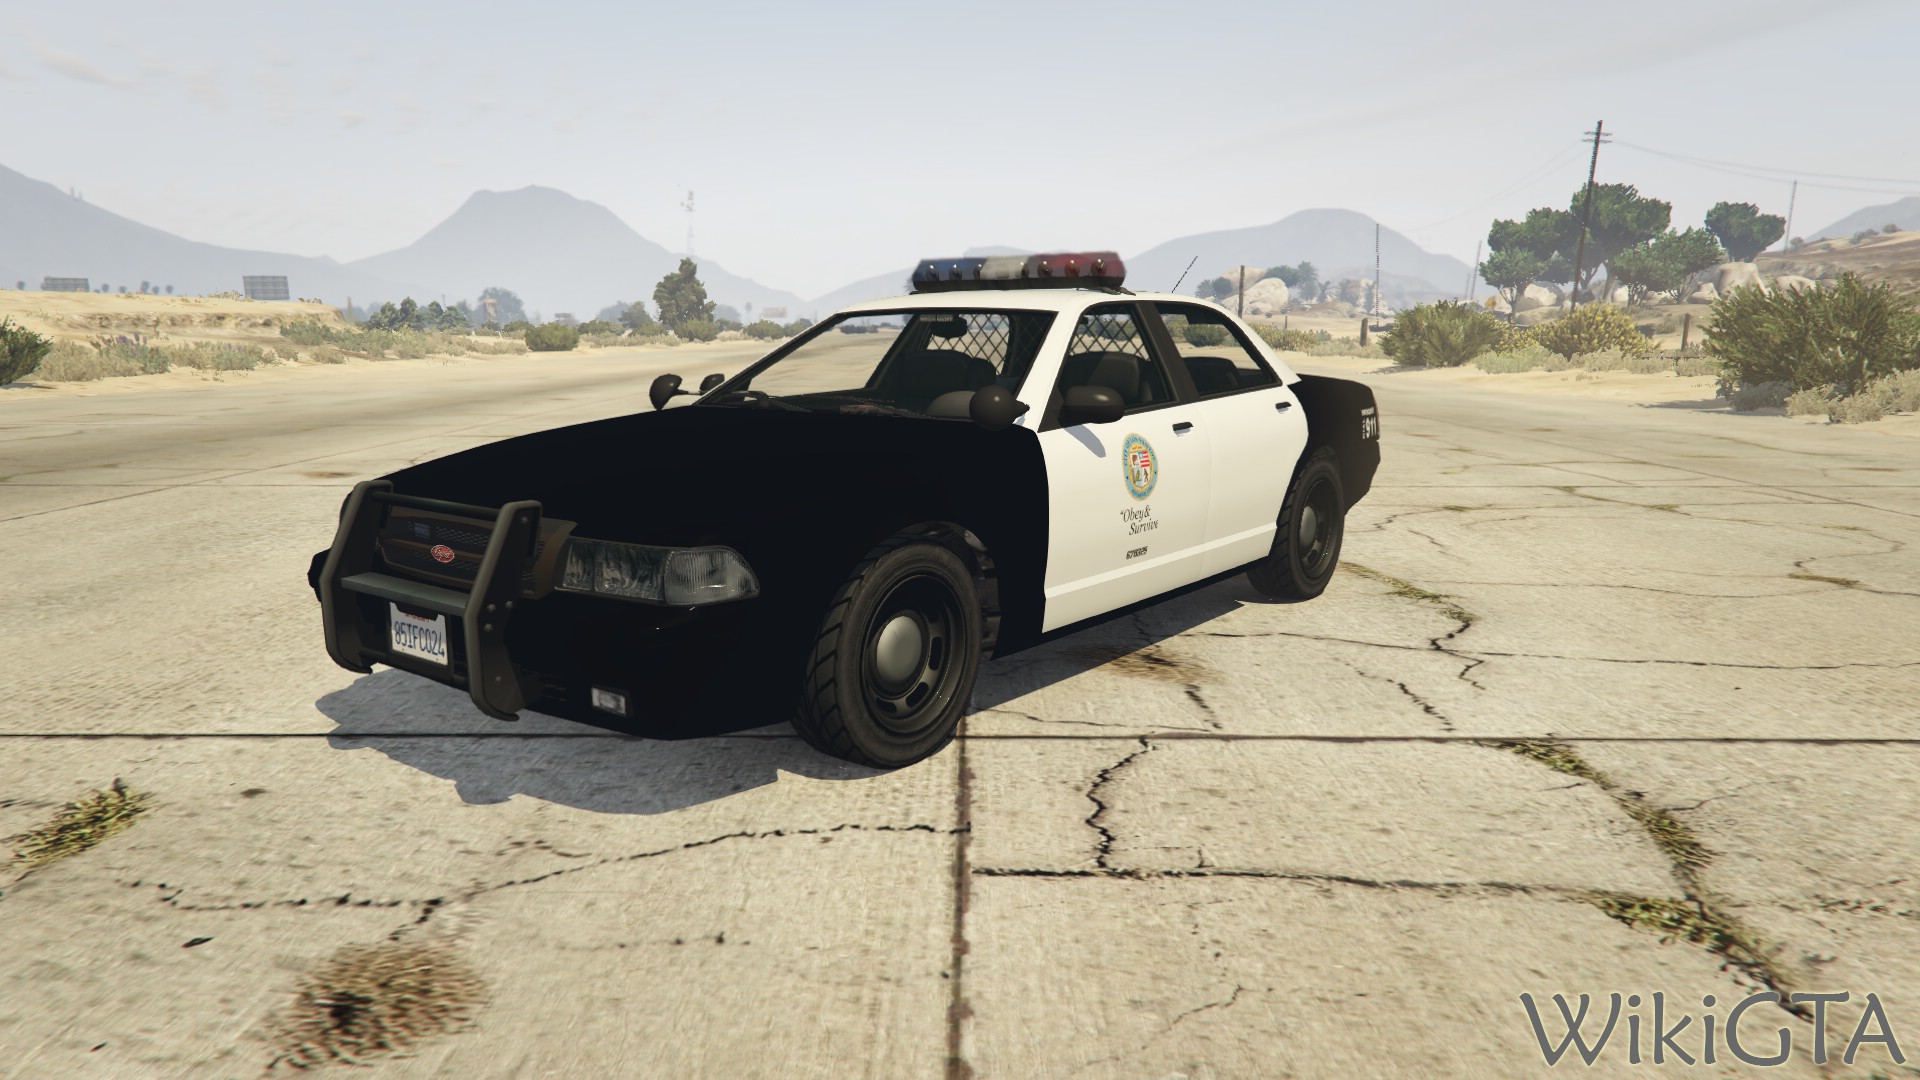 Police Cruiser in GTA V